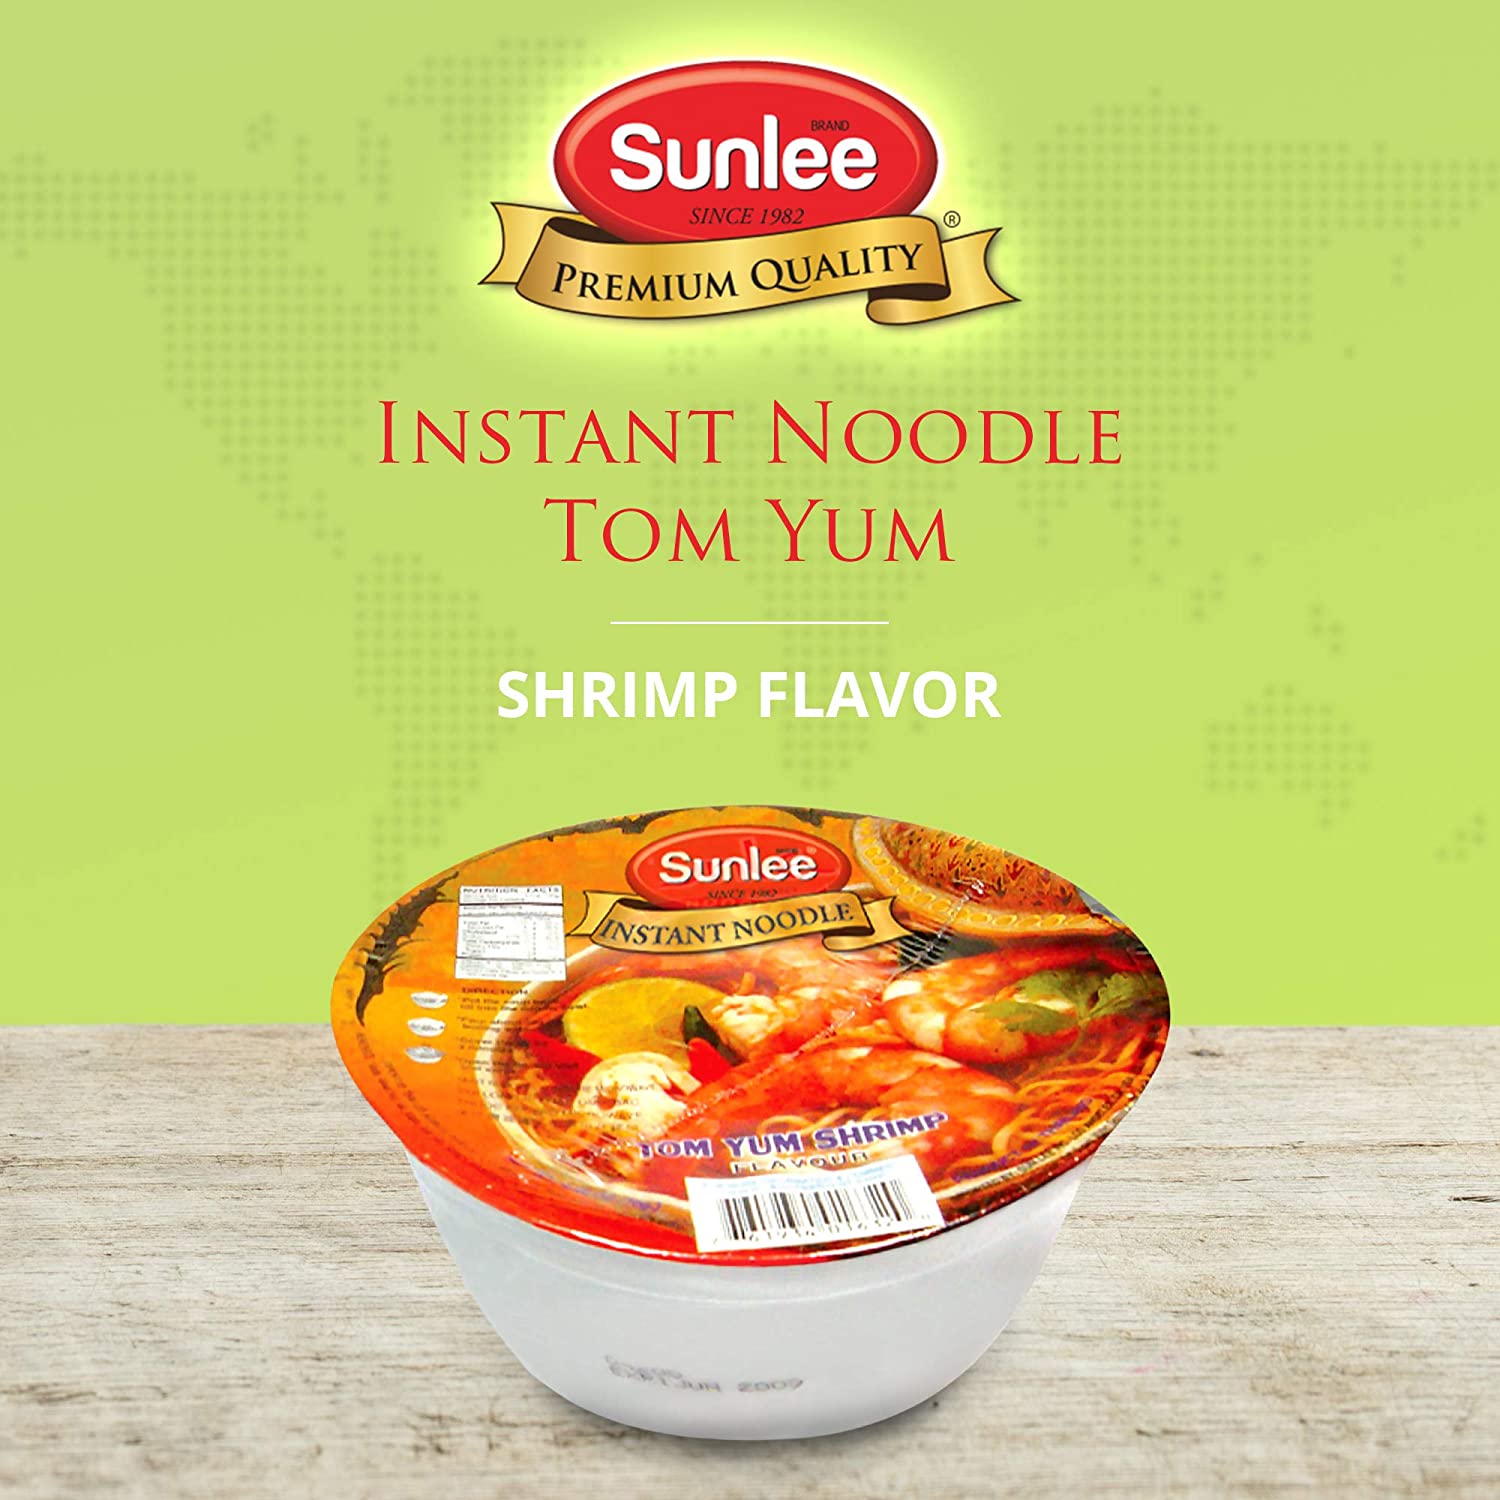 E3SL100 Sunlee Instant Noodle Tom Yum Shrimp Flavor 12×70 g – Sunlee